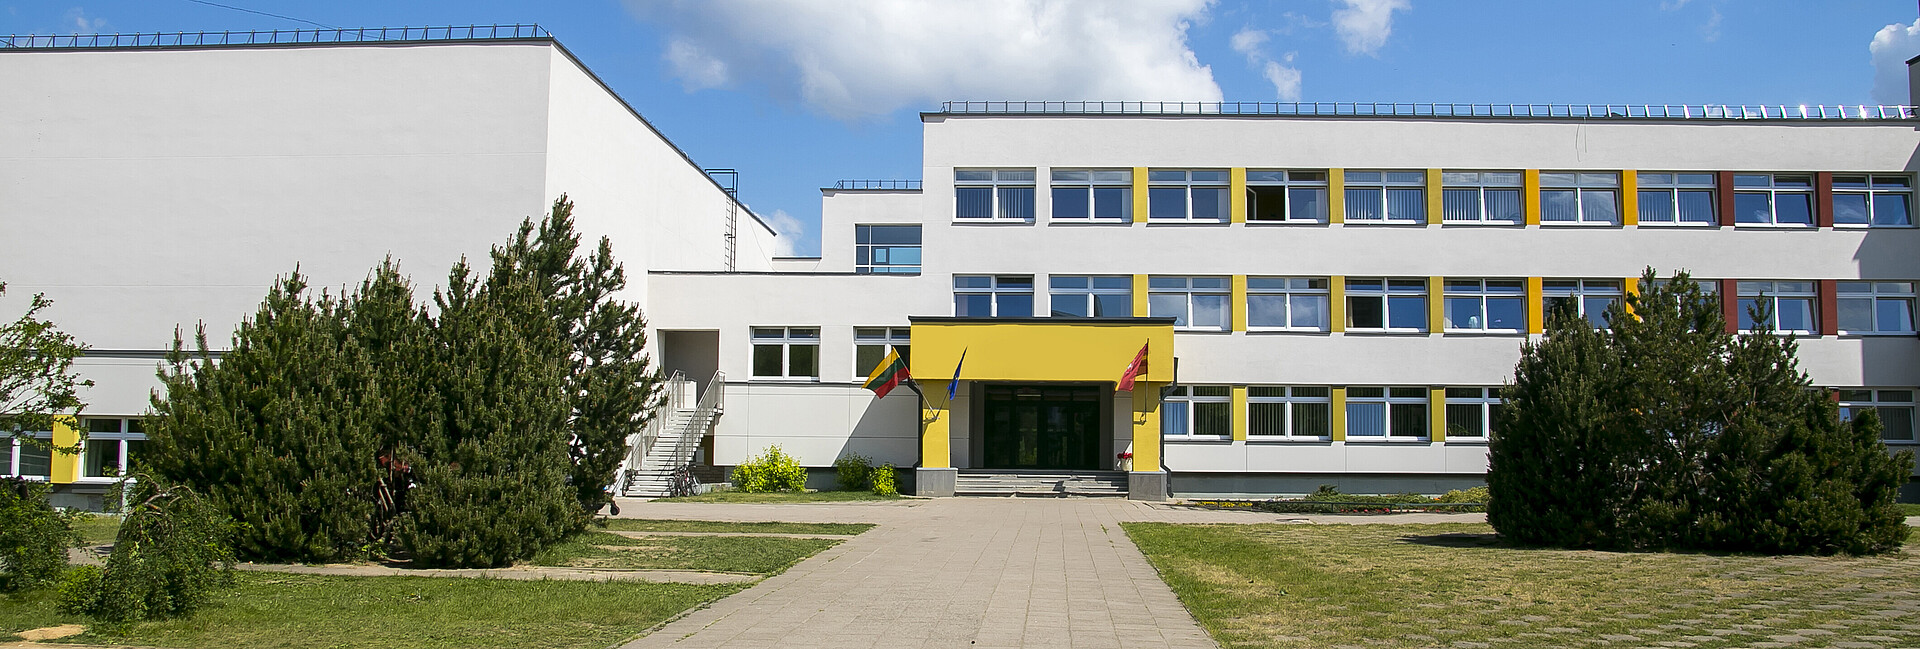 Blick von außen auf ein öffentliches Schulgebäude